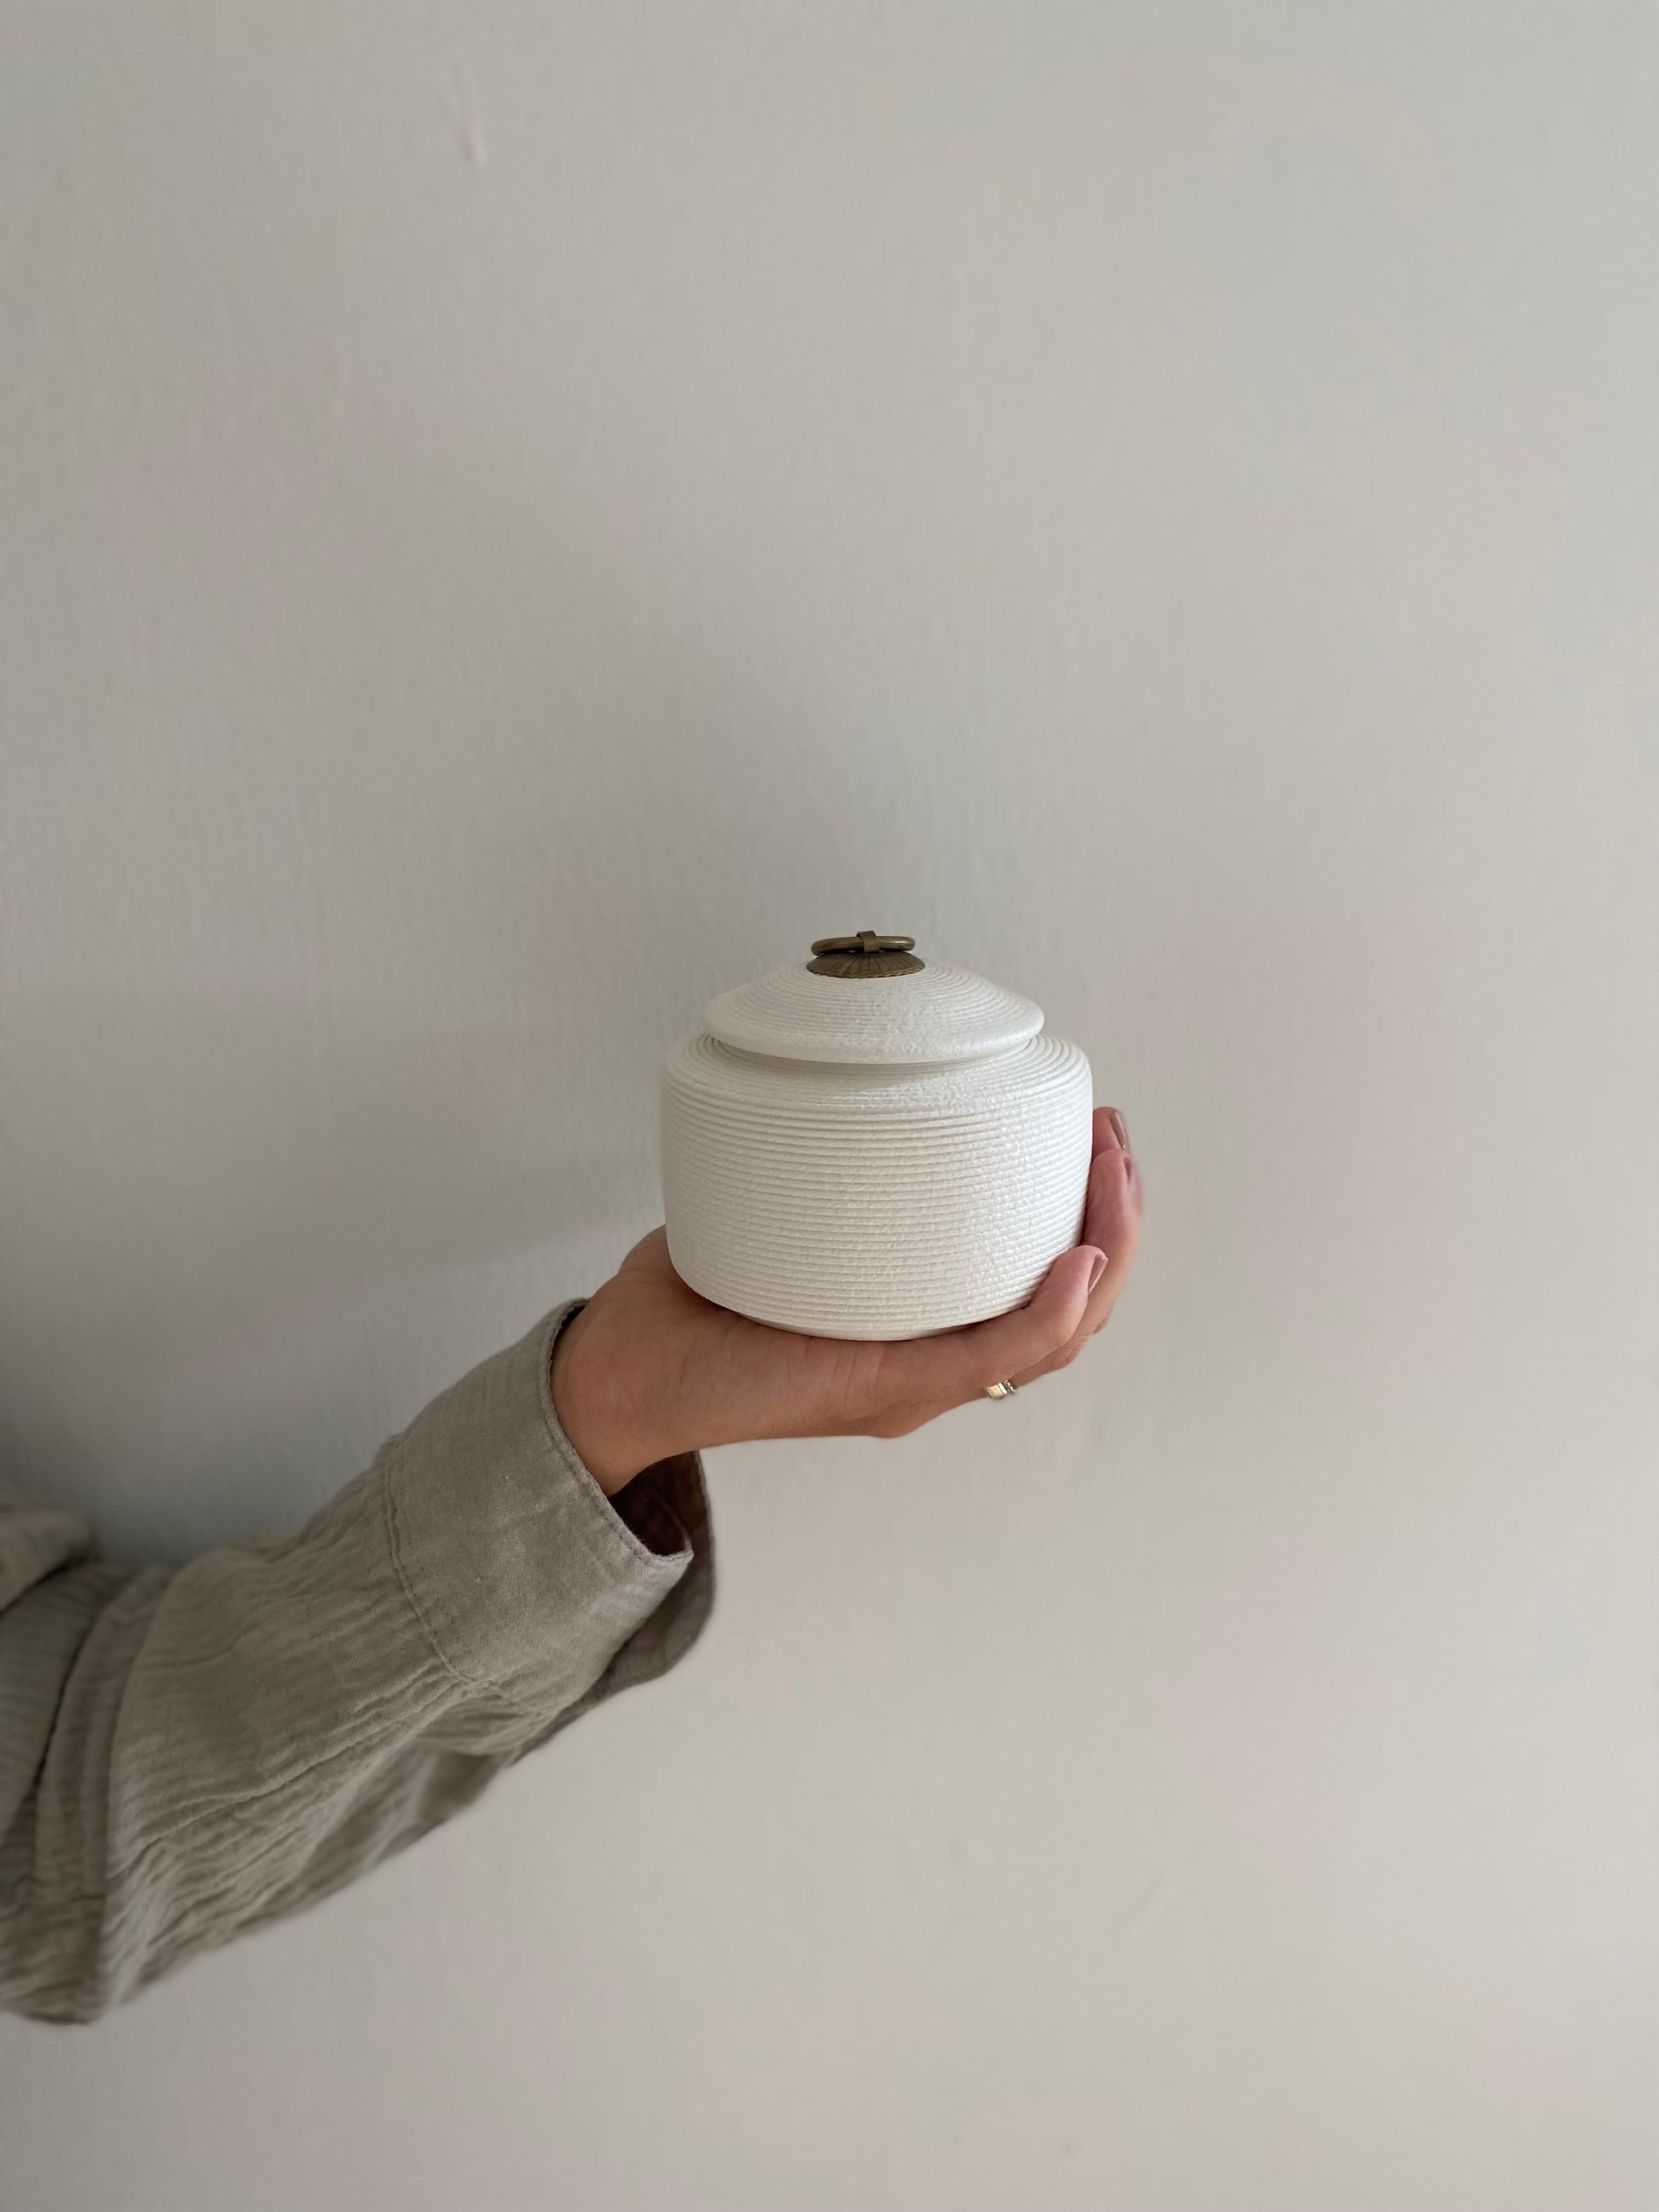 kleine witte oosterse keramische urn voor mens en dier in hand